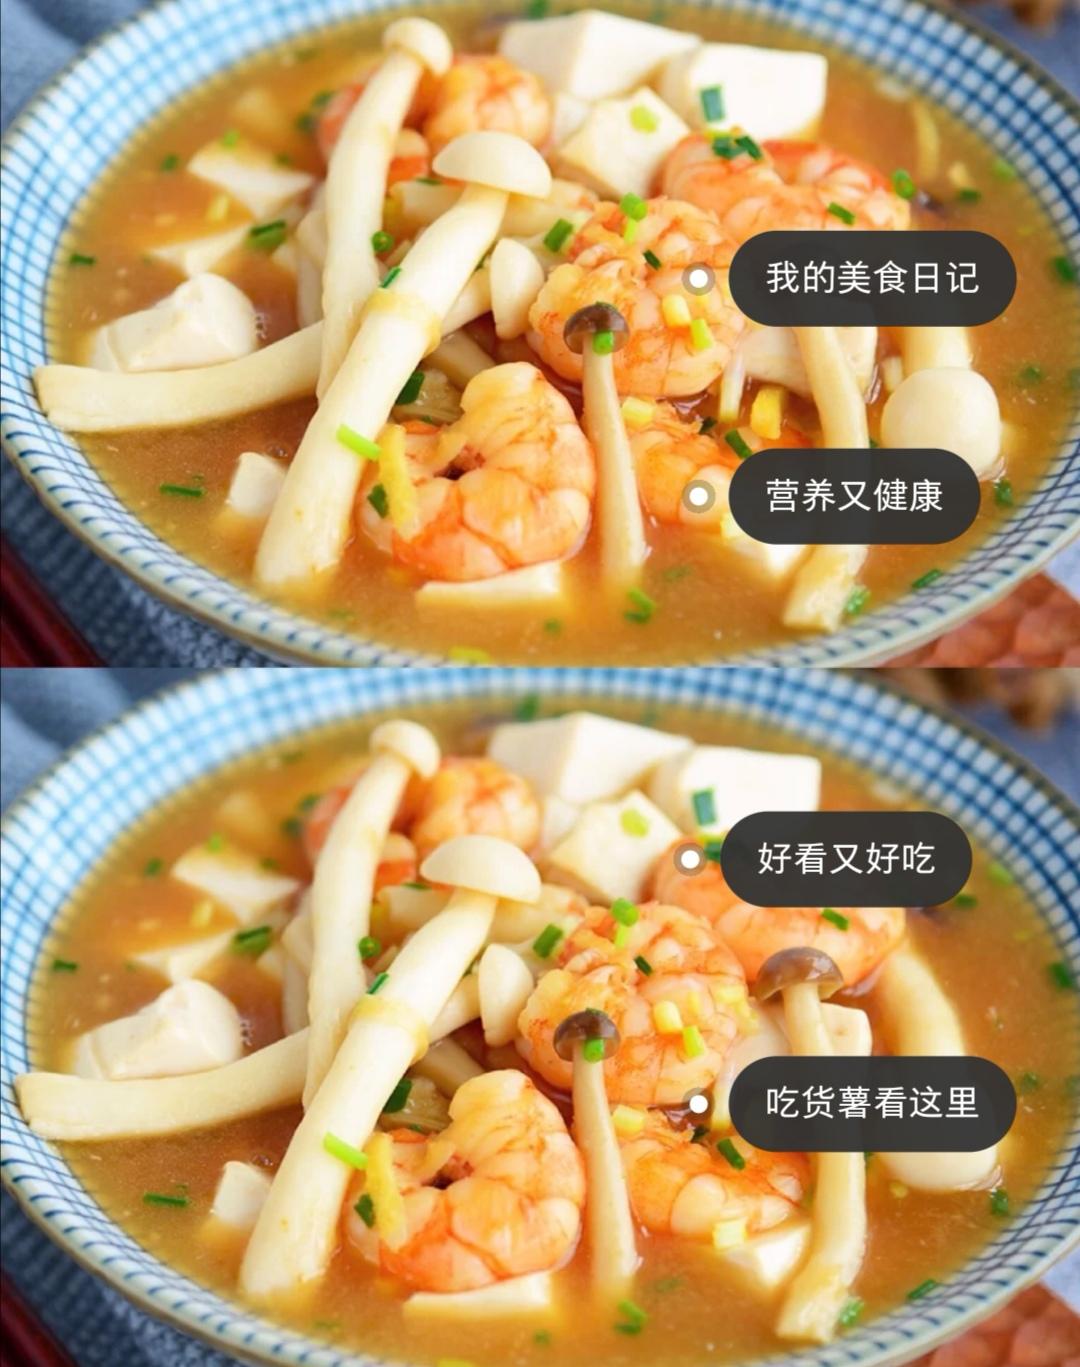 鲜香浓郁口感爽滑的菌菇虾仁豆腐汤